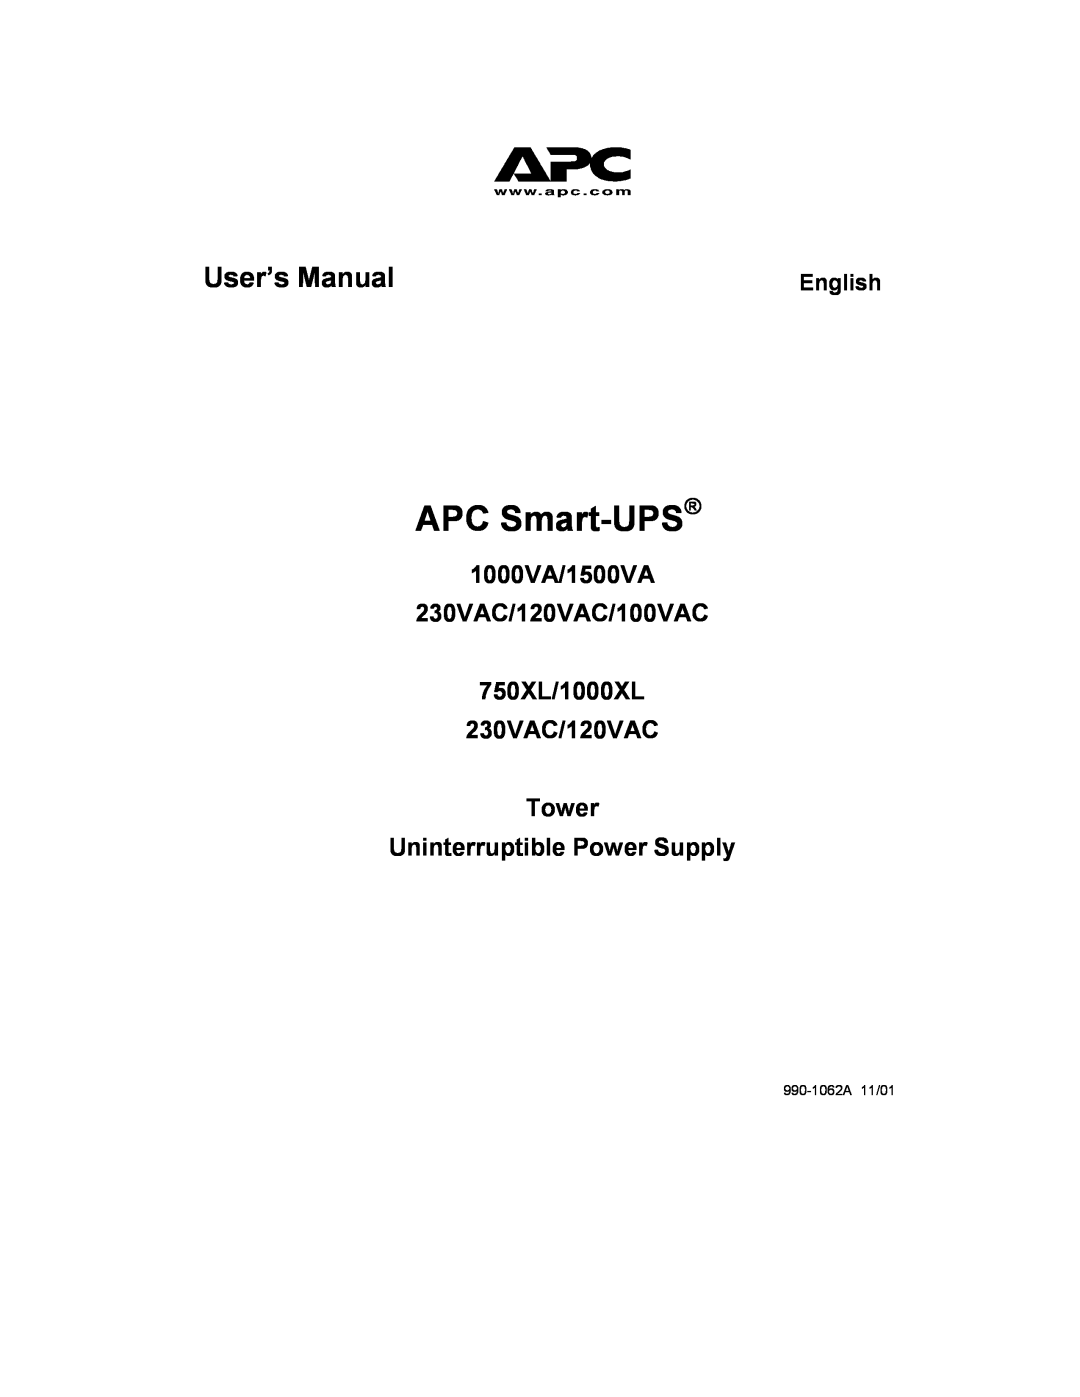 APC user manual APC Smart-UPS, User’s Manual, 1000VA/1500VA 230VAC/120VAC/100VAC 750XL/1000XL 230VAC/120VAC Tower 